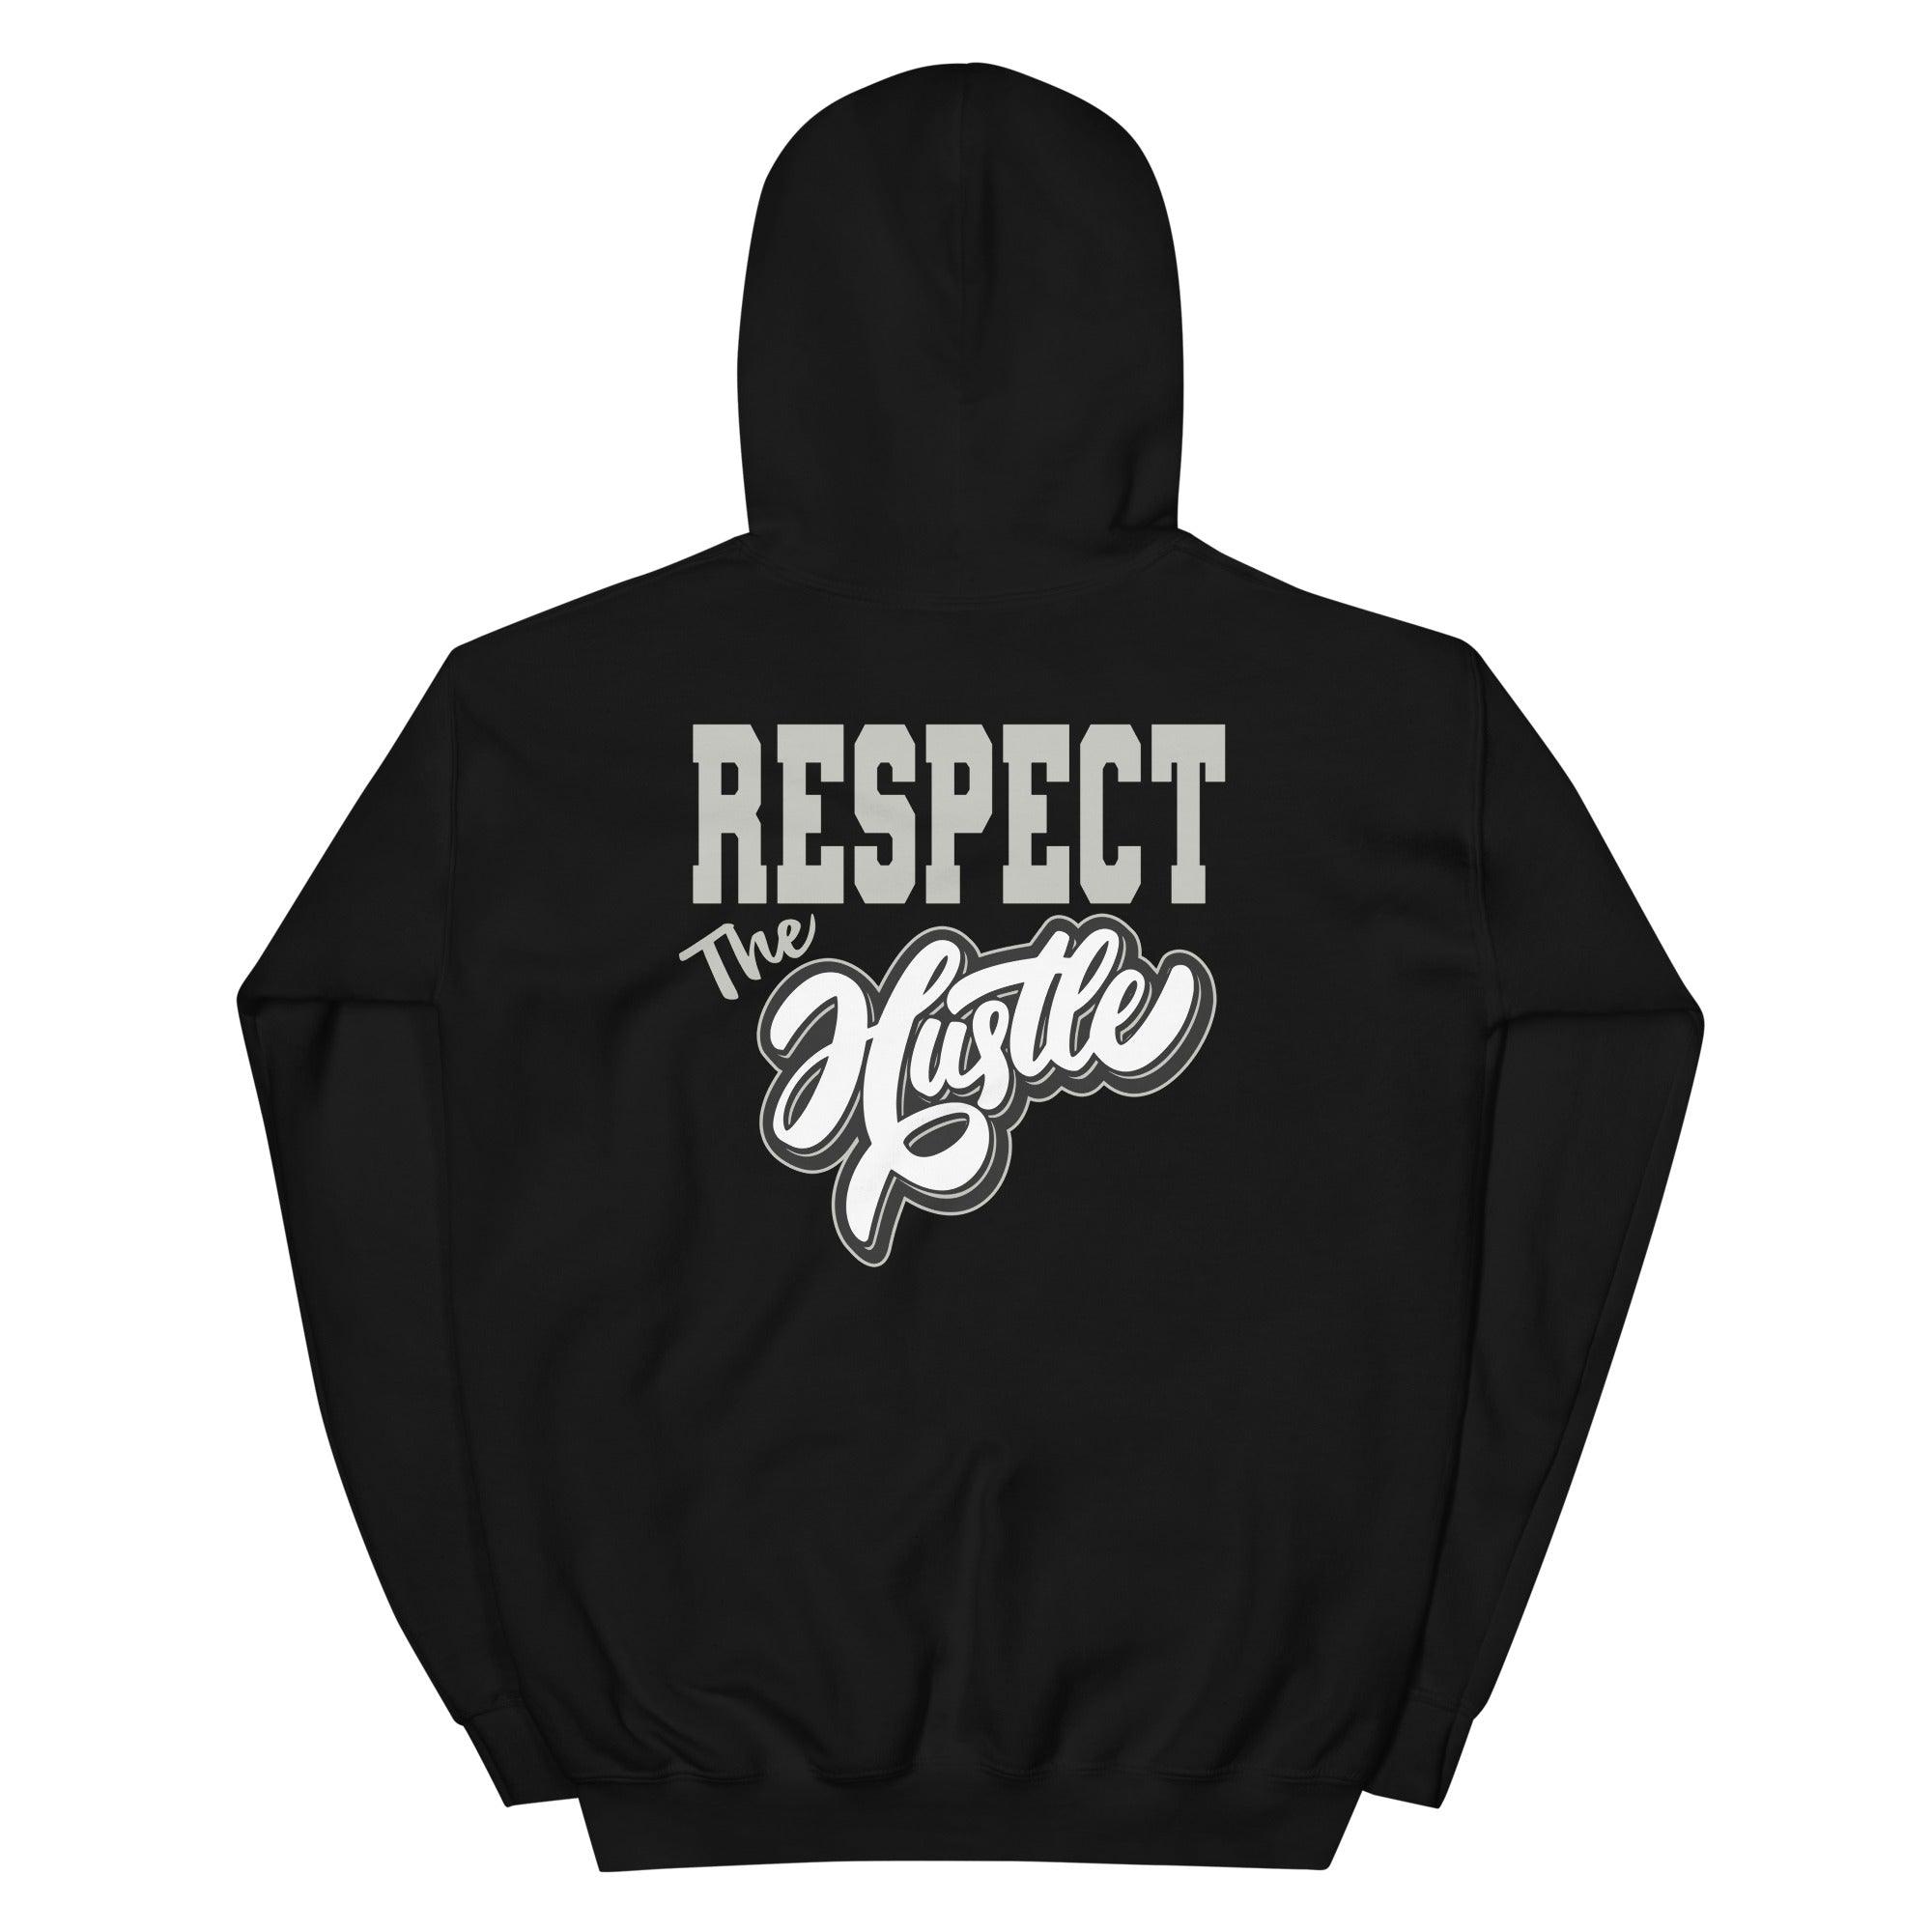 Respect The Hustle Sneaker Sweatshirt AJ 11s Retro Jubilee photo